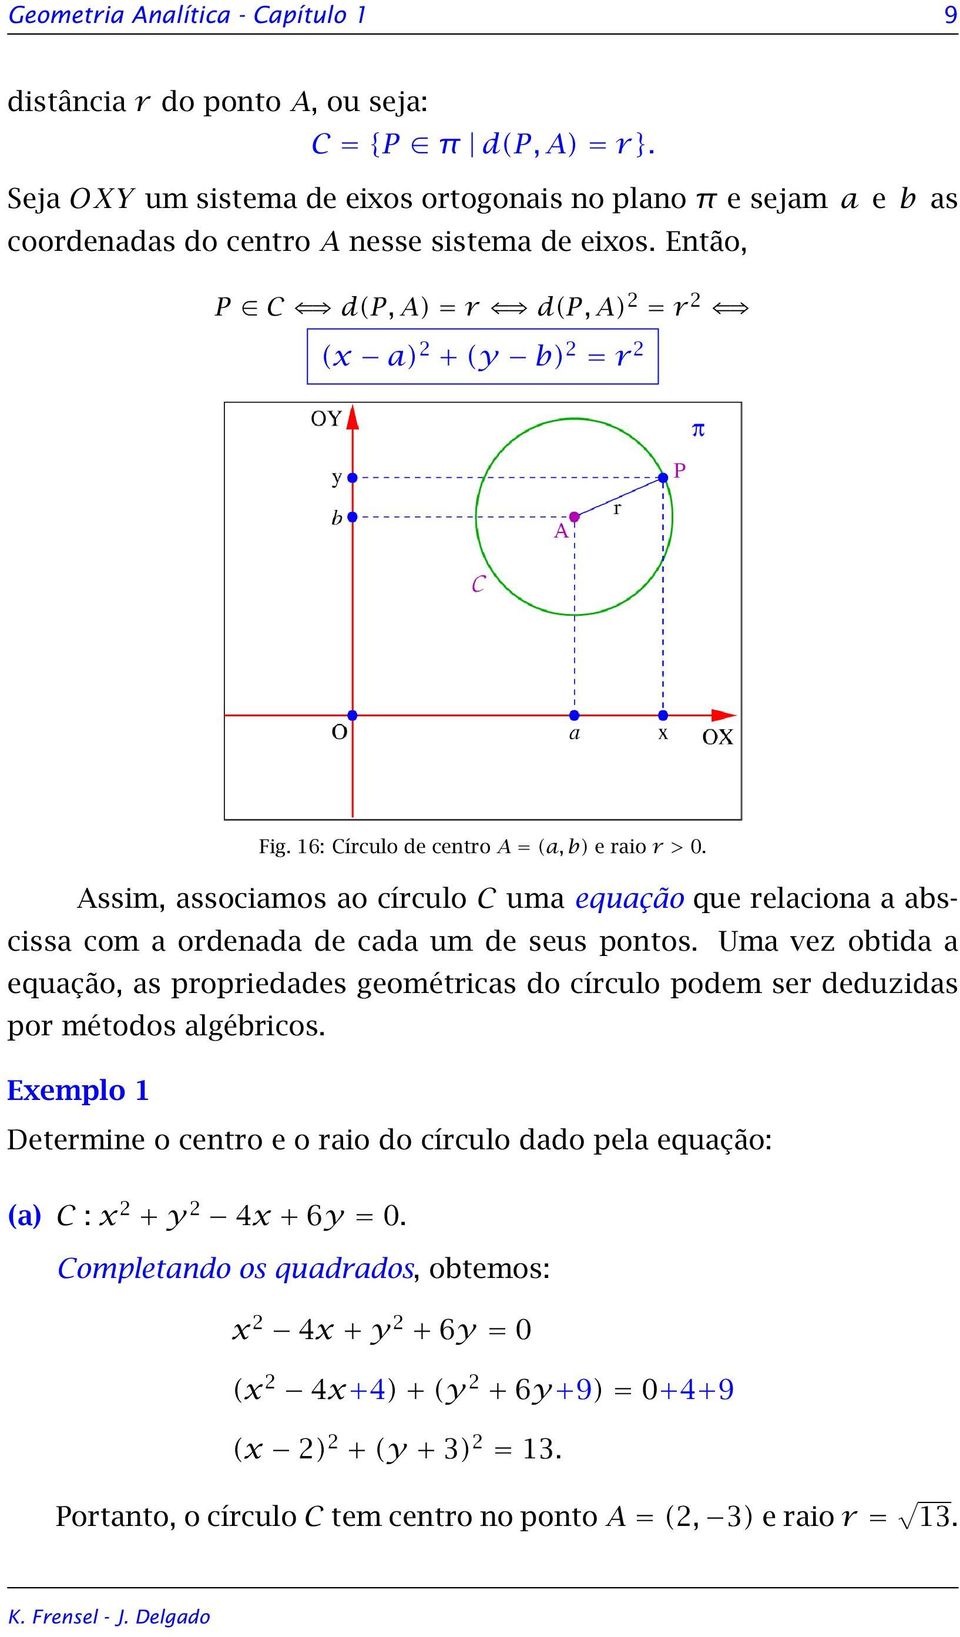 16: Círculo de centro A = (a, b) e raio r > 0. Assim, associamos ao círculo C uma equação que relaciona a abscissa com a ordenada de cada um de seus pontos.